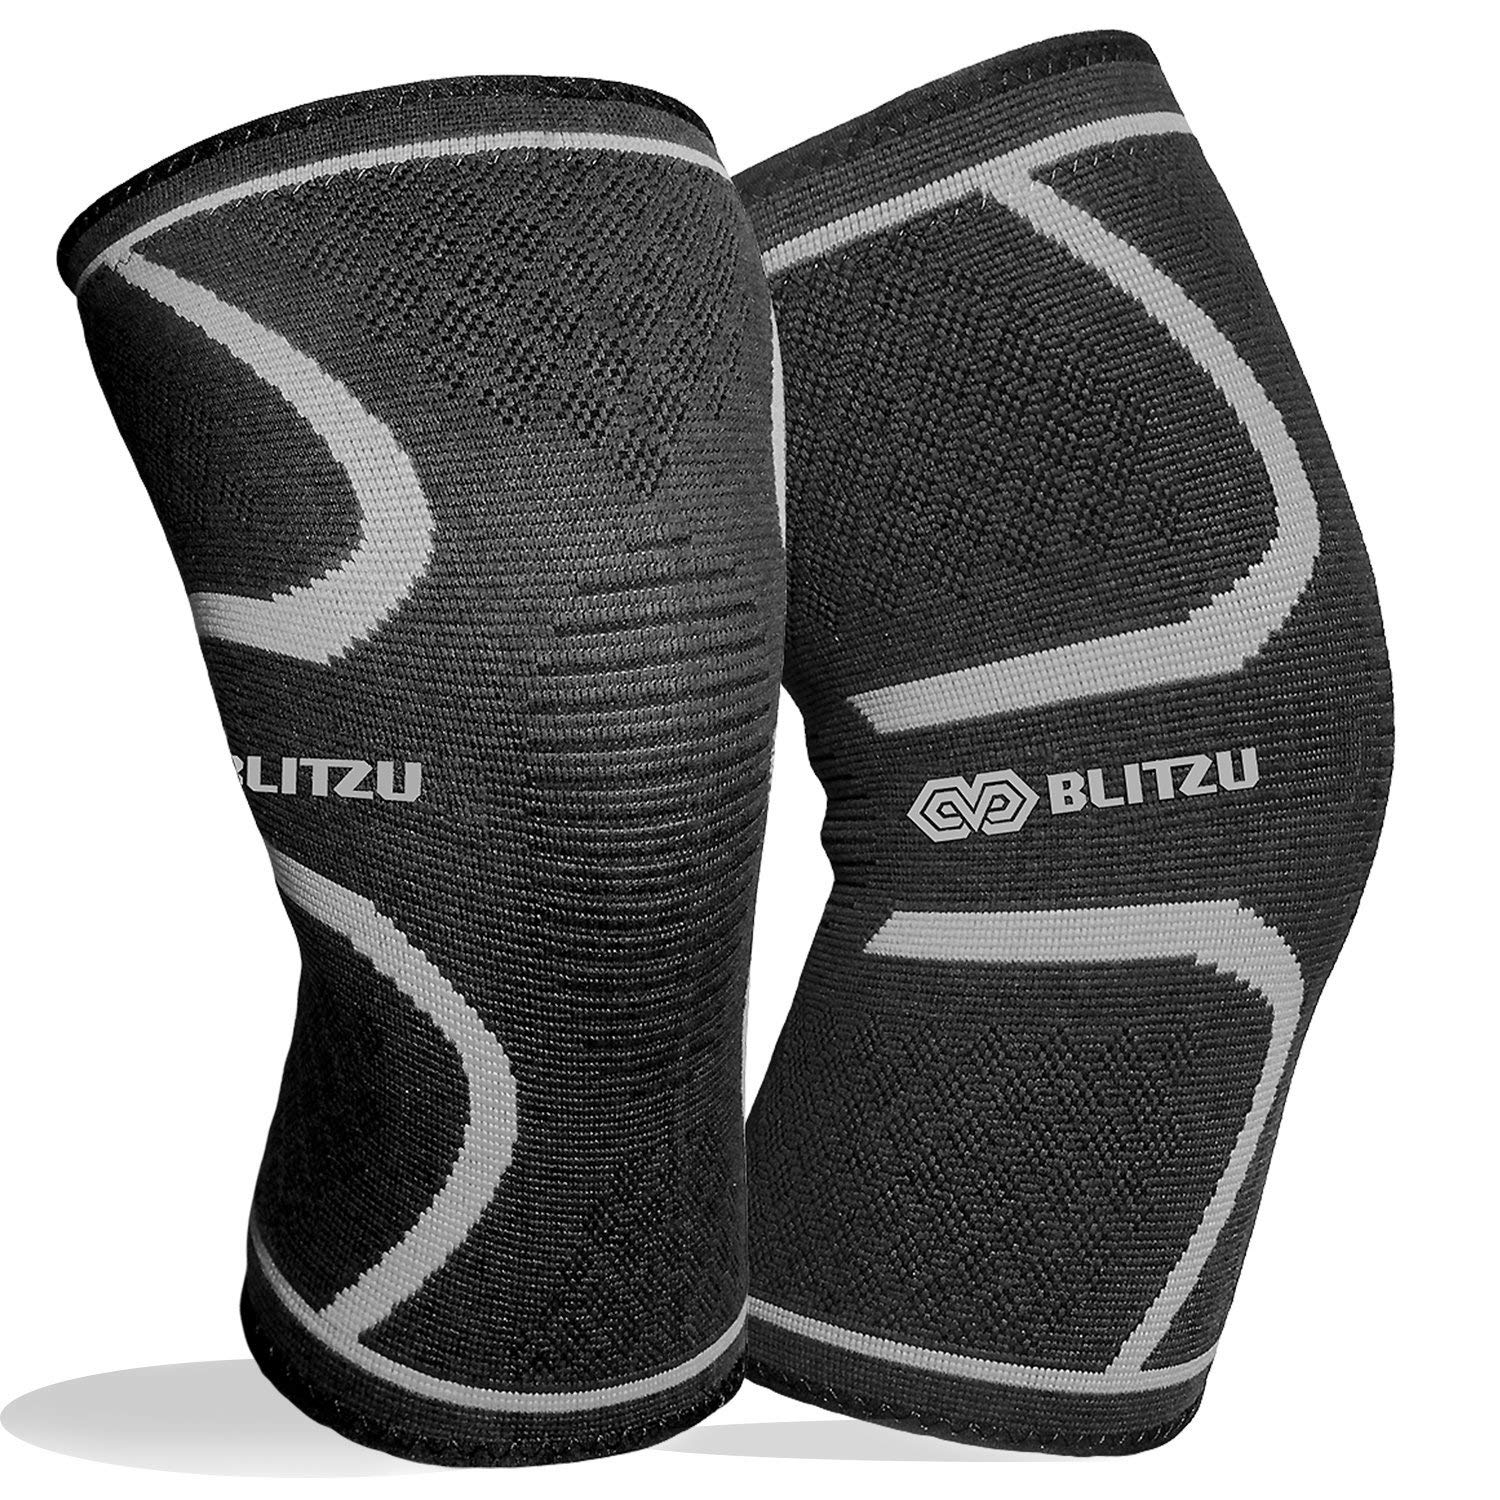 BLITZU Flex Plus Compression Knee Brace Review